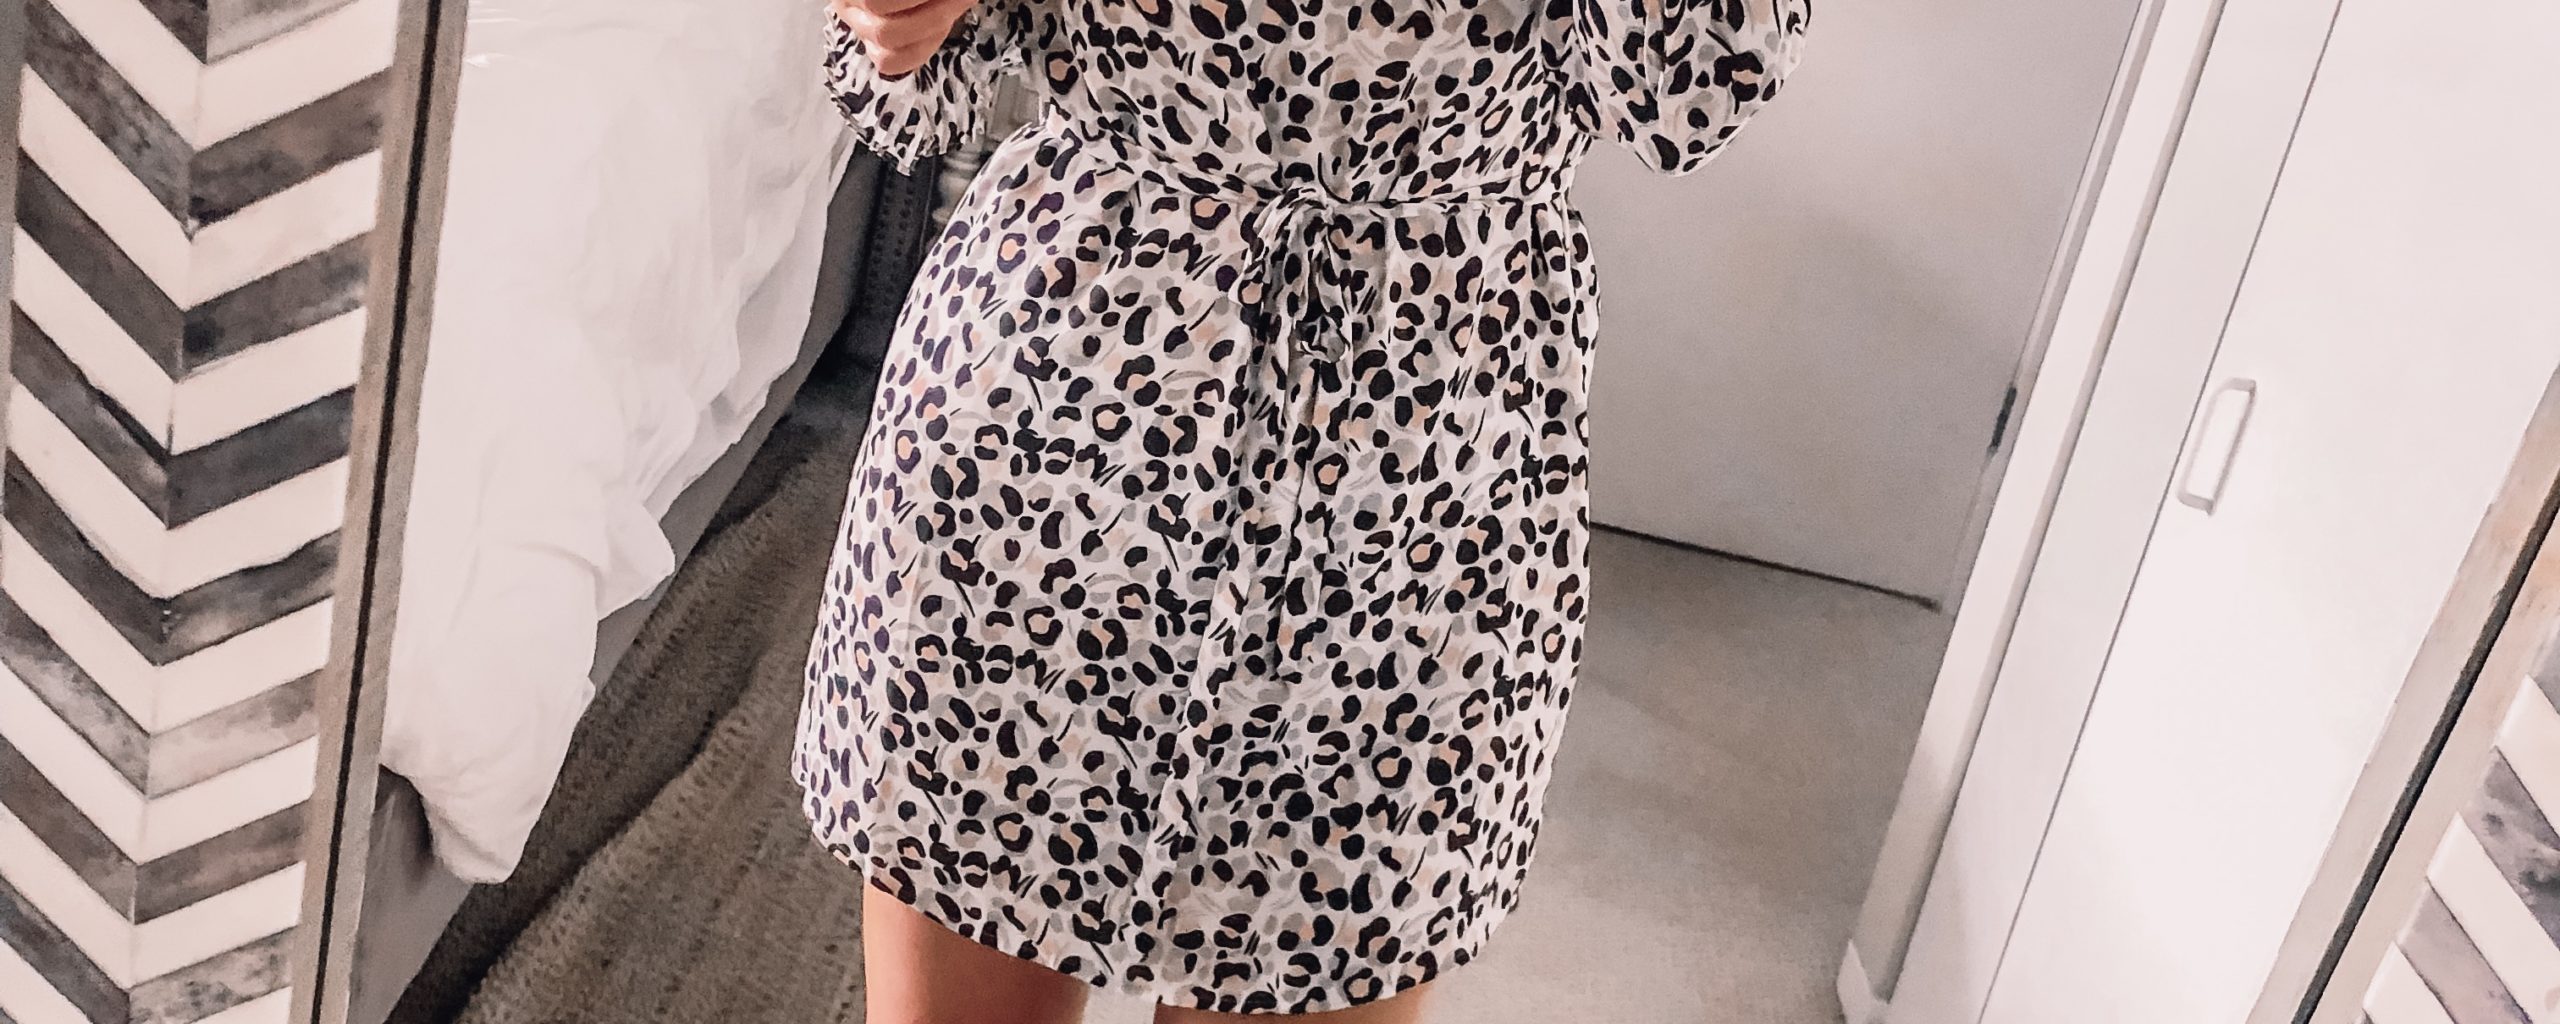 OOTD 8.15.19: Leopard Print Dress